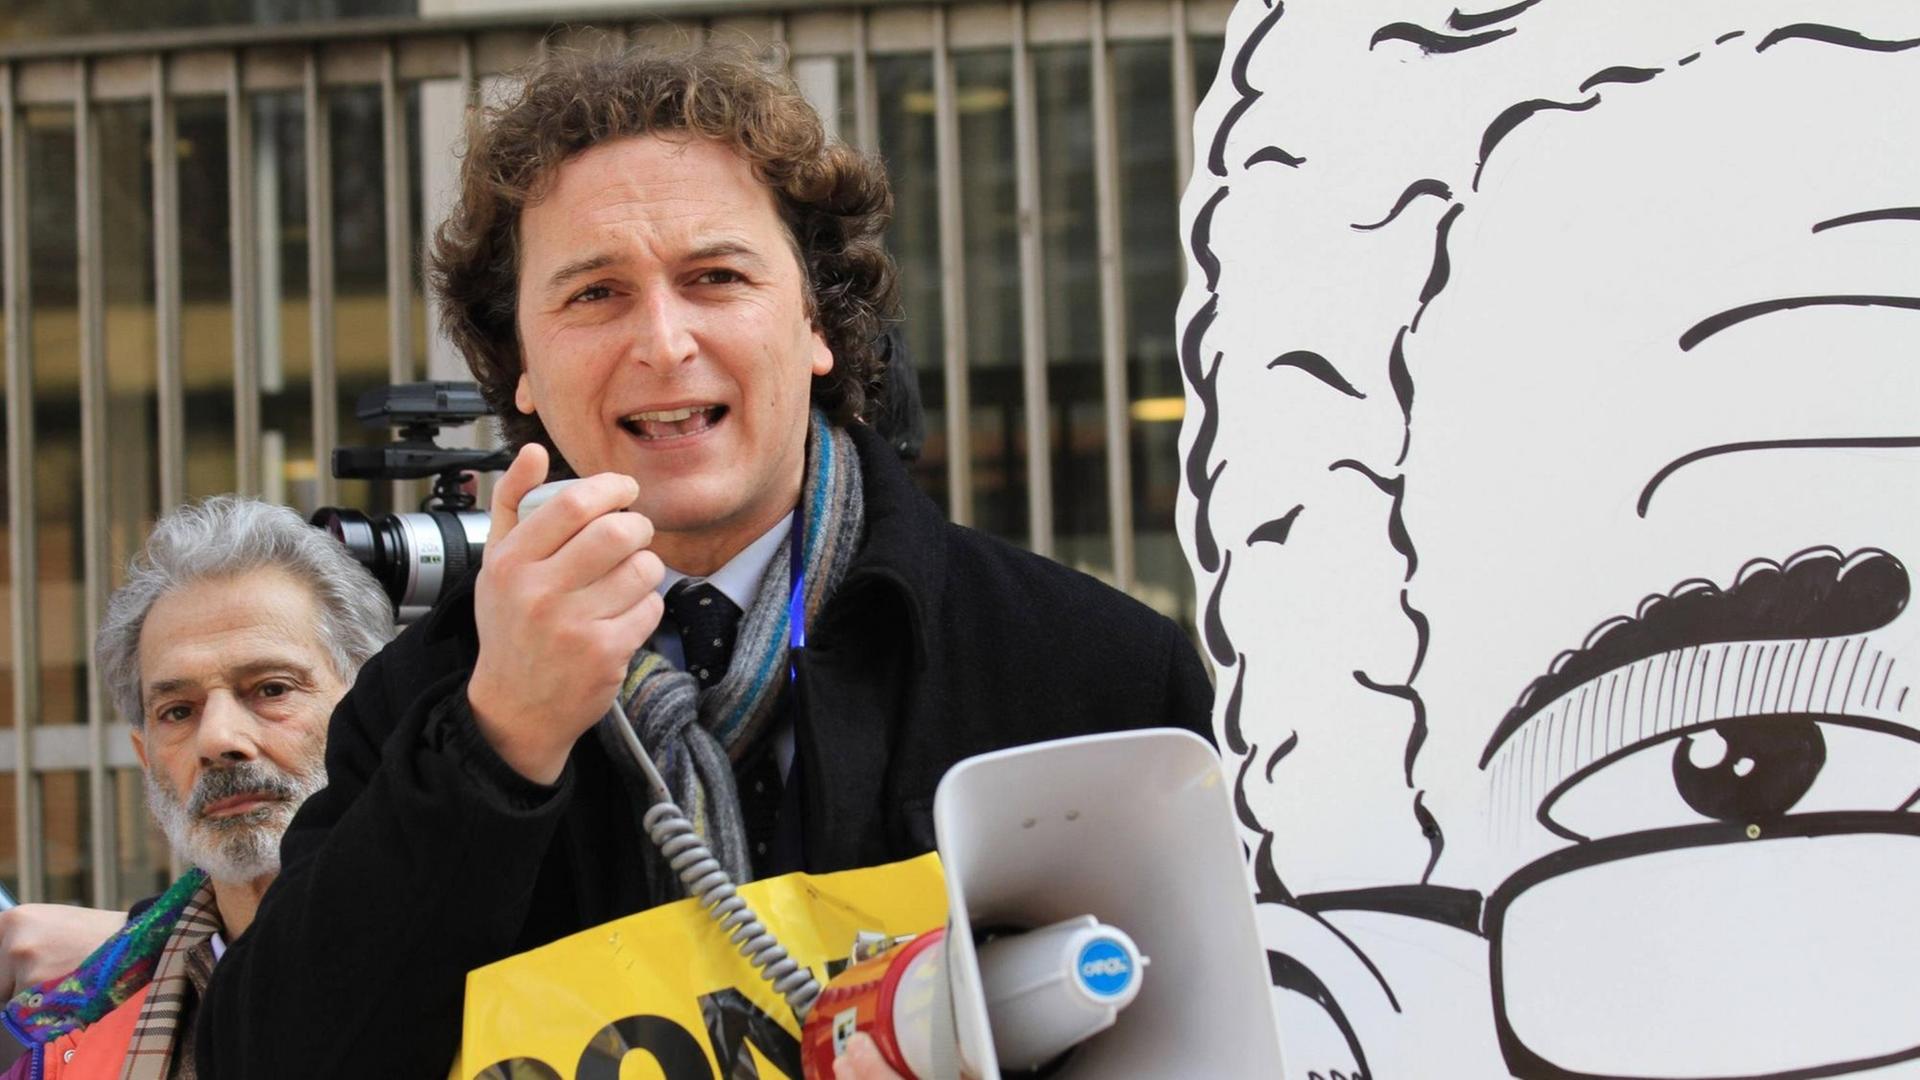 Mario Staderini bei einer Demonstration der Partei Radicali Italiani (RI) 